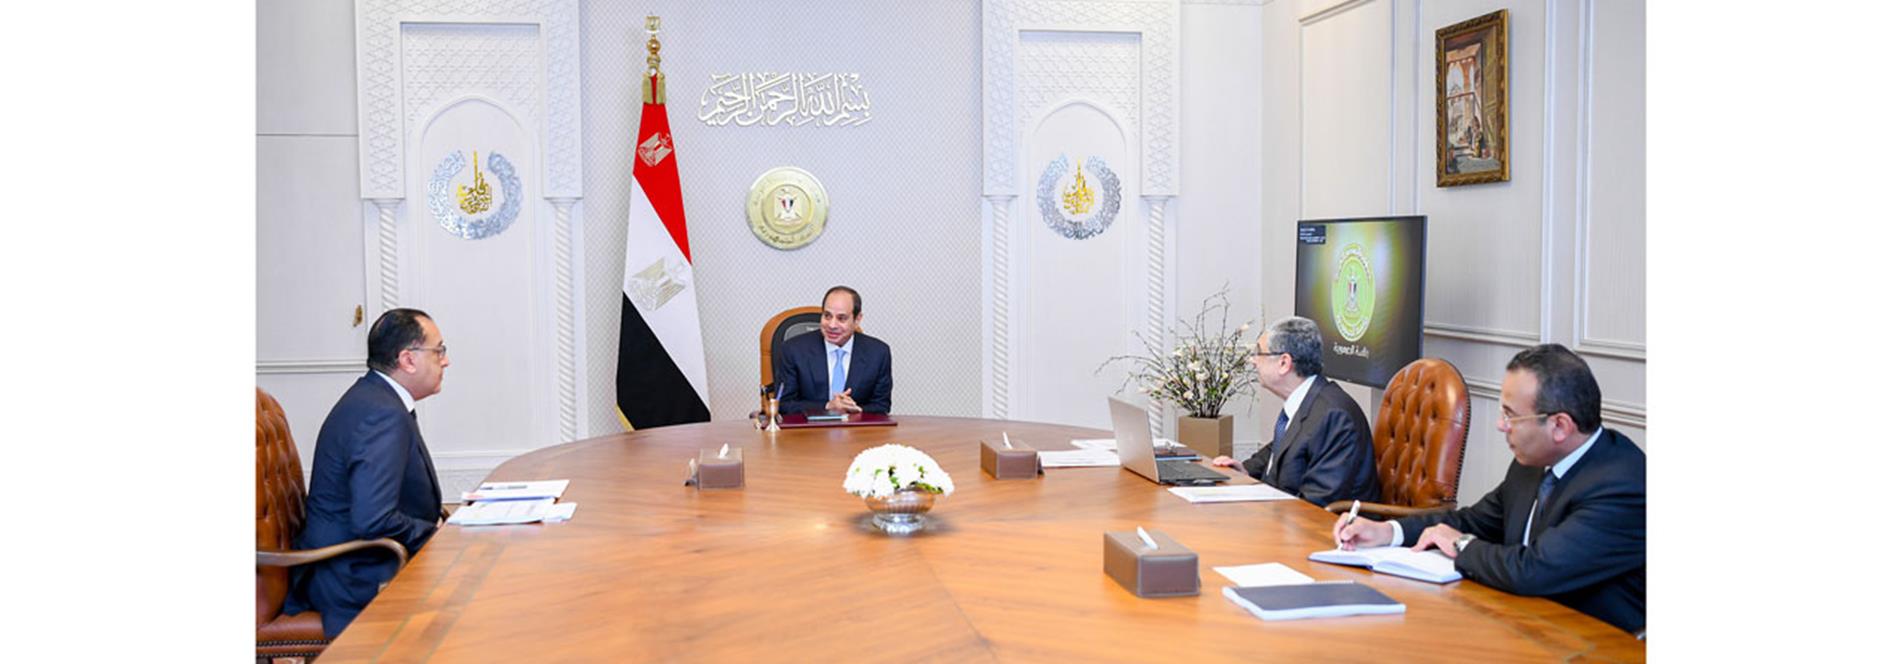 الرئيس عبد الفتاح السيسي يجتمع مع  رئيس مجلس الوزراء و وزير الكهرباء والطاقة المتجددة.